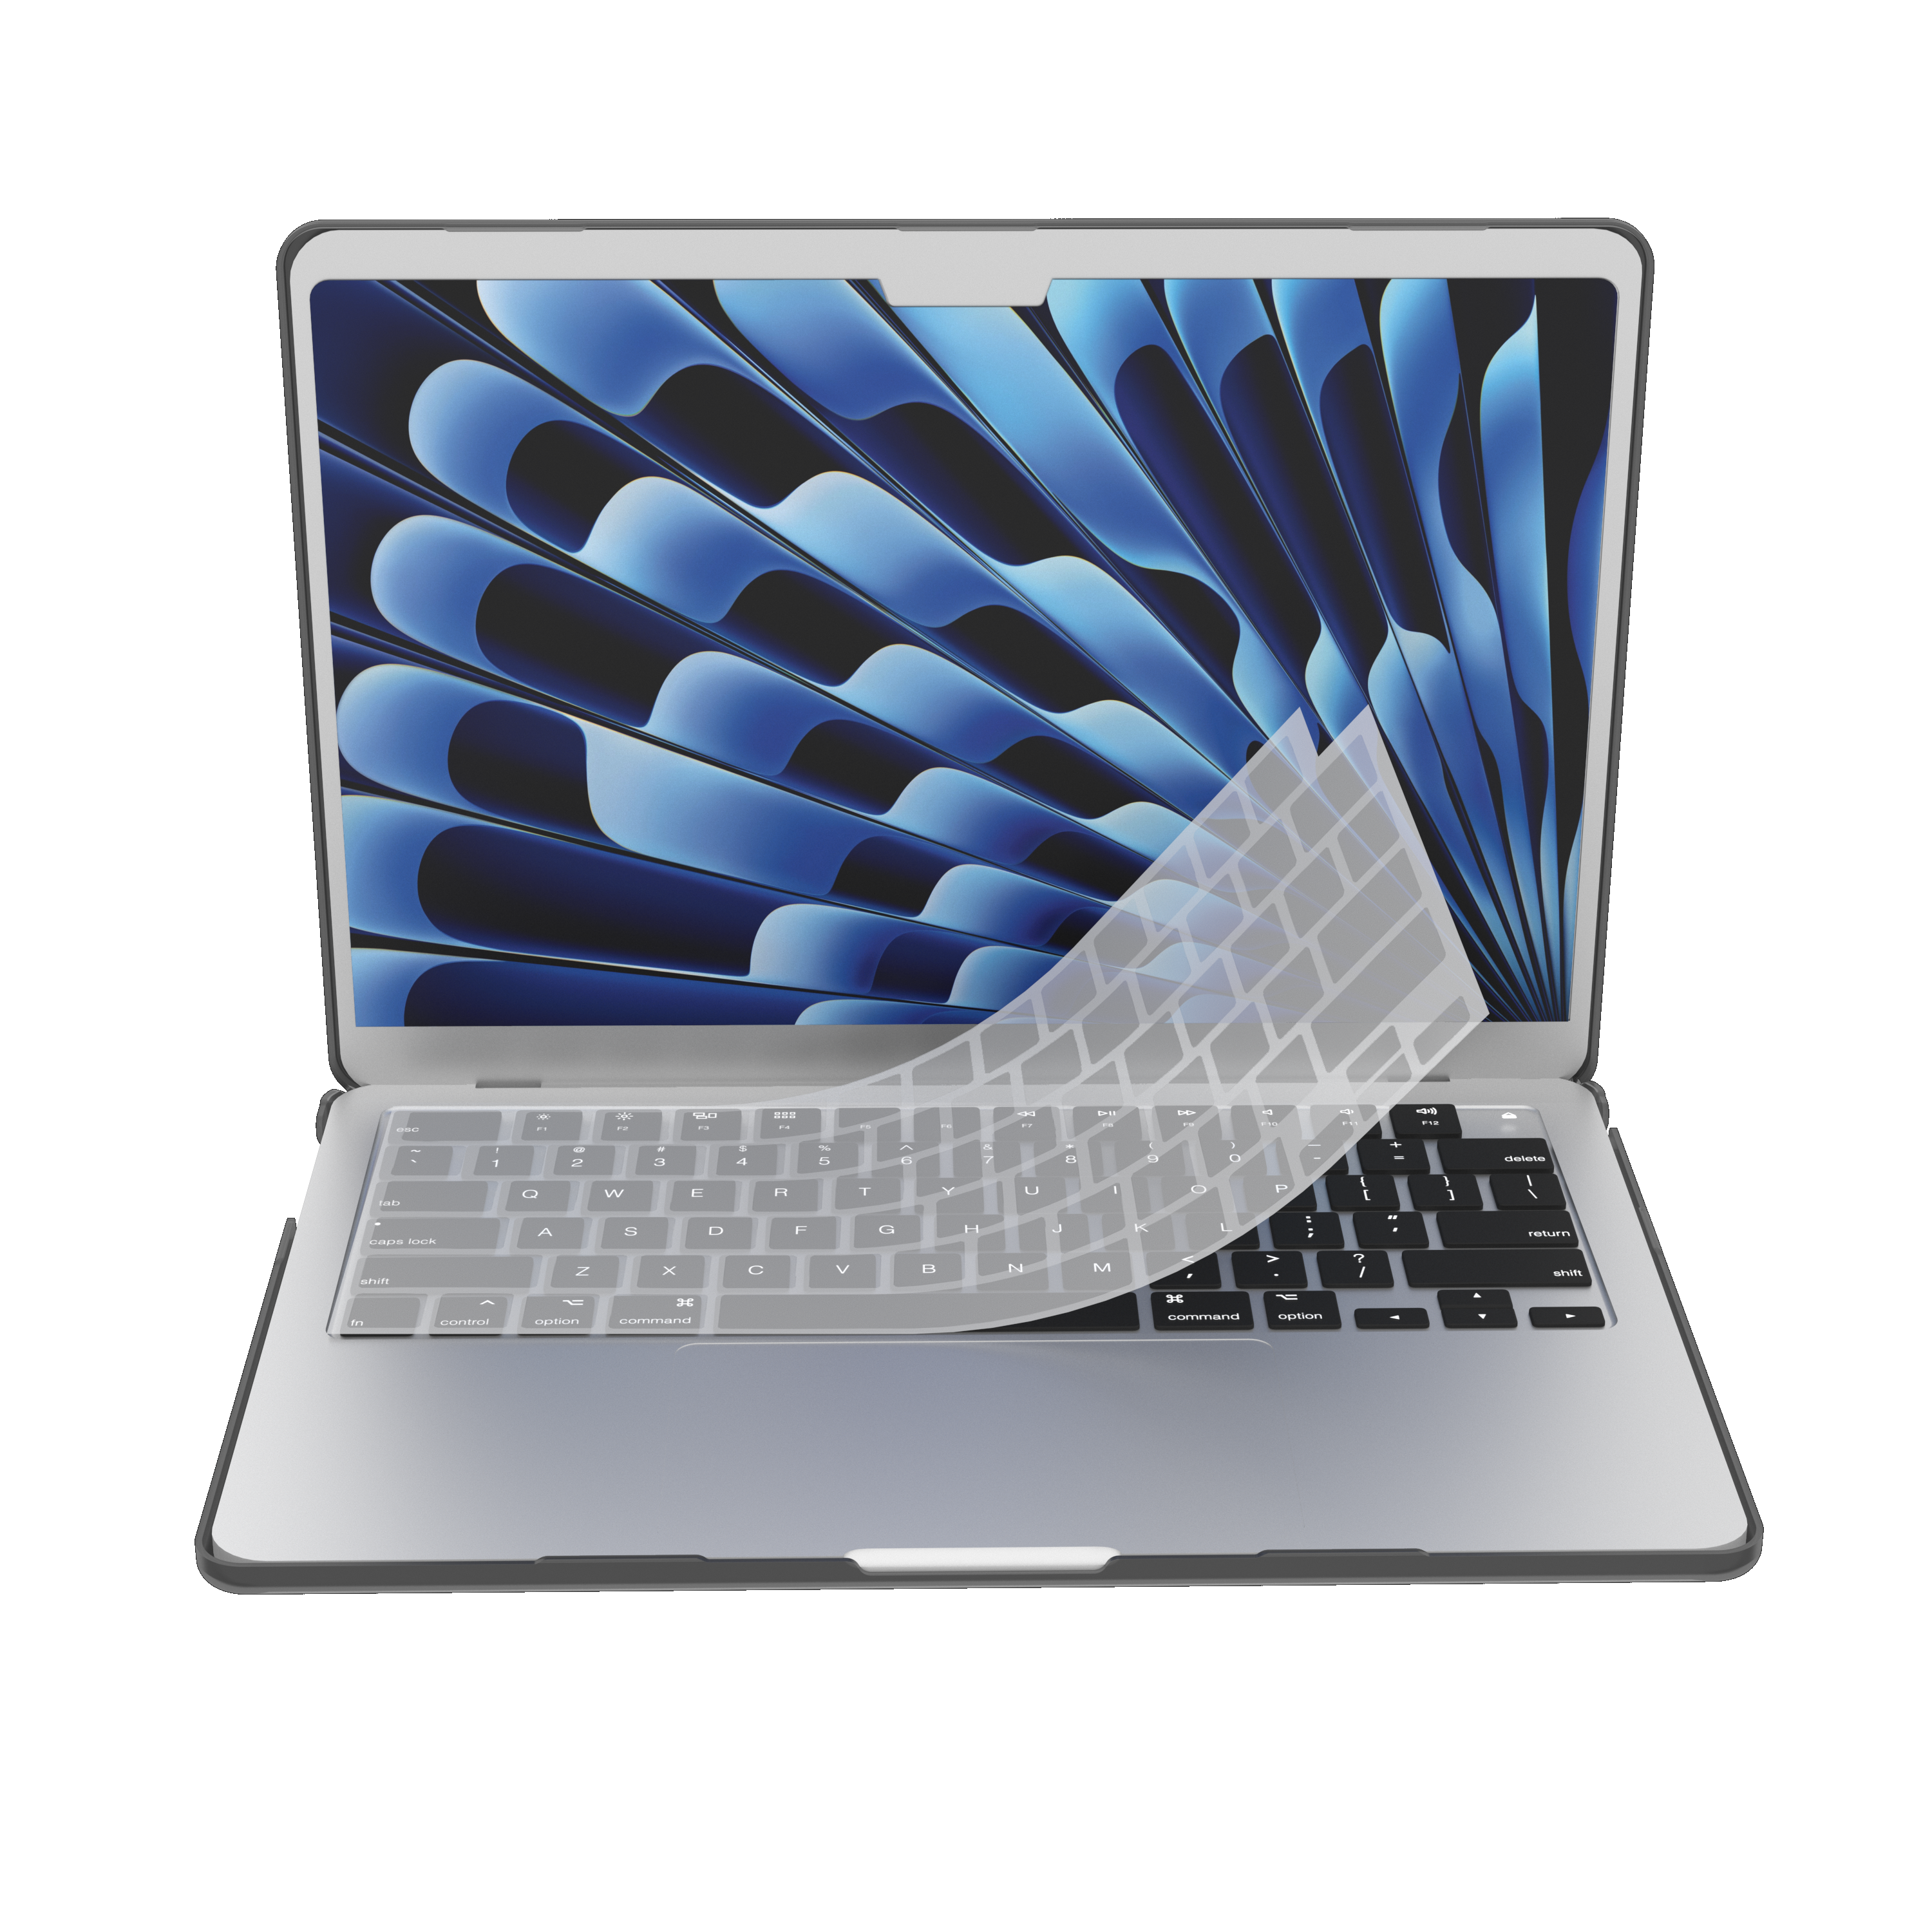 CASE-MATE Snap-On Laptophülle Bumper Grau/Transparent Kunststoff, für Apple